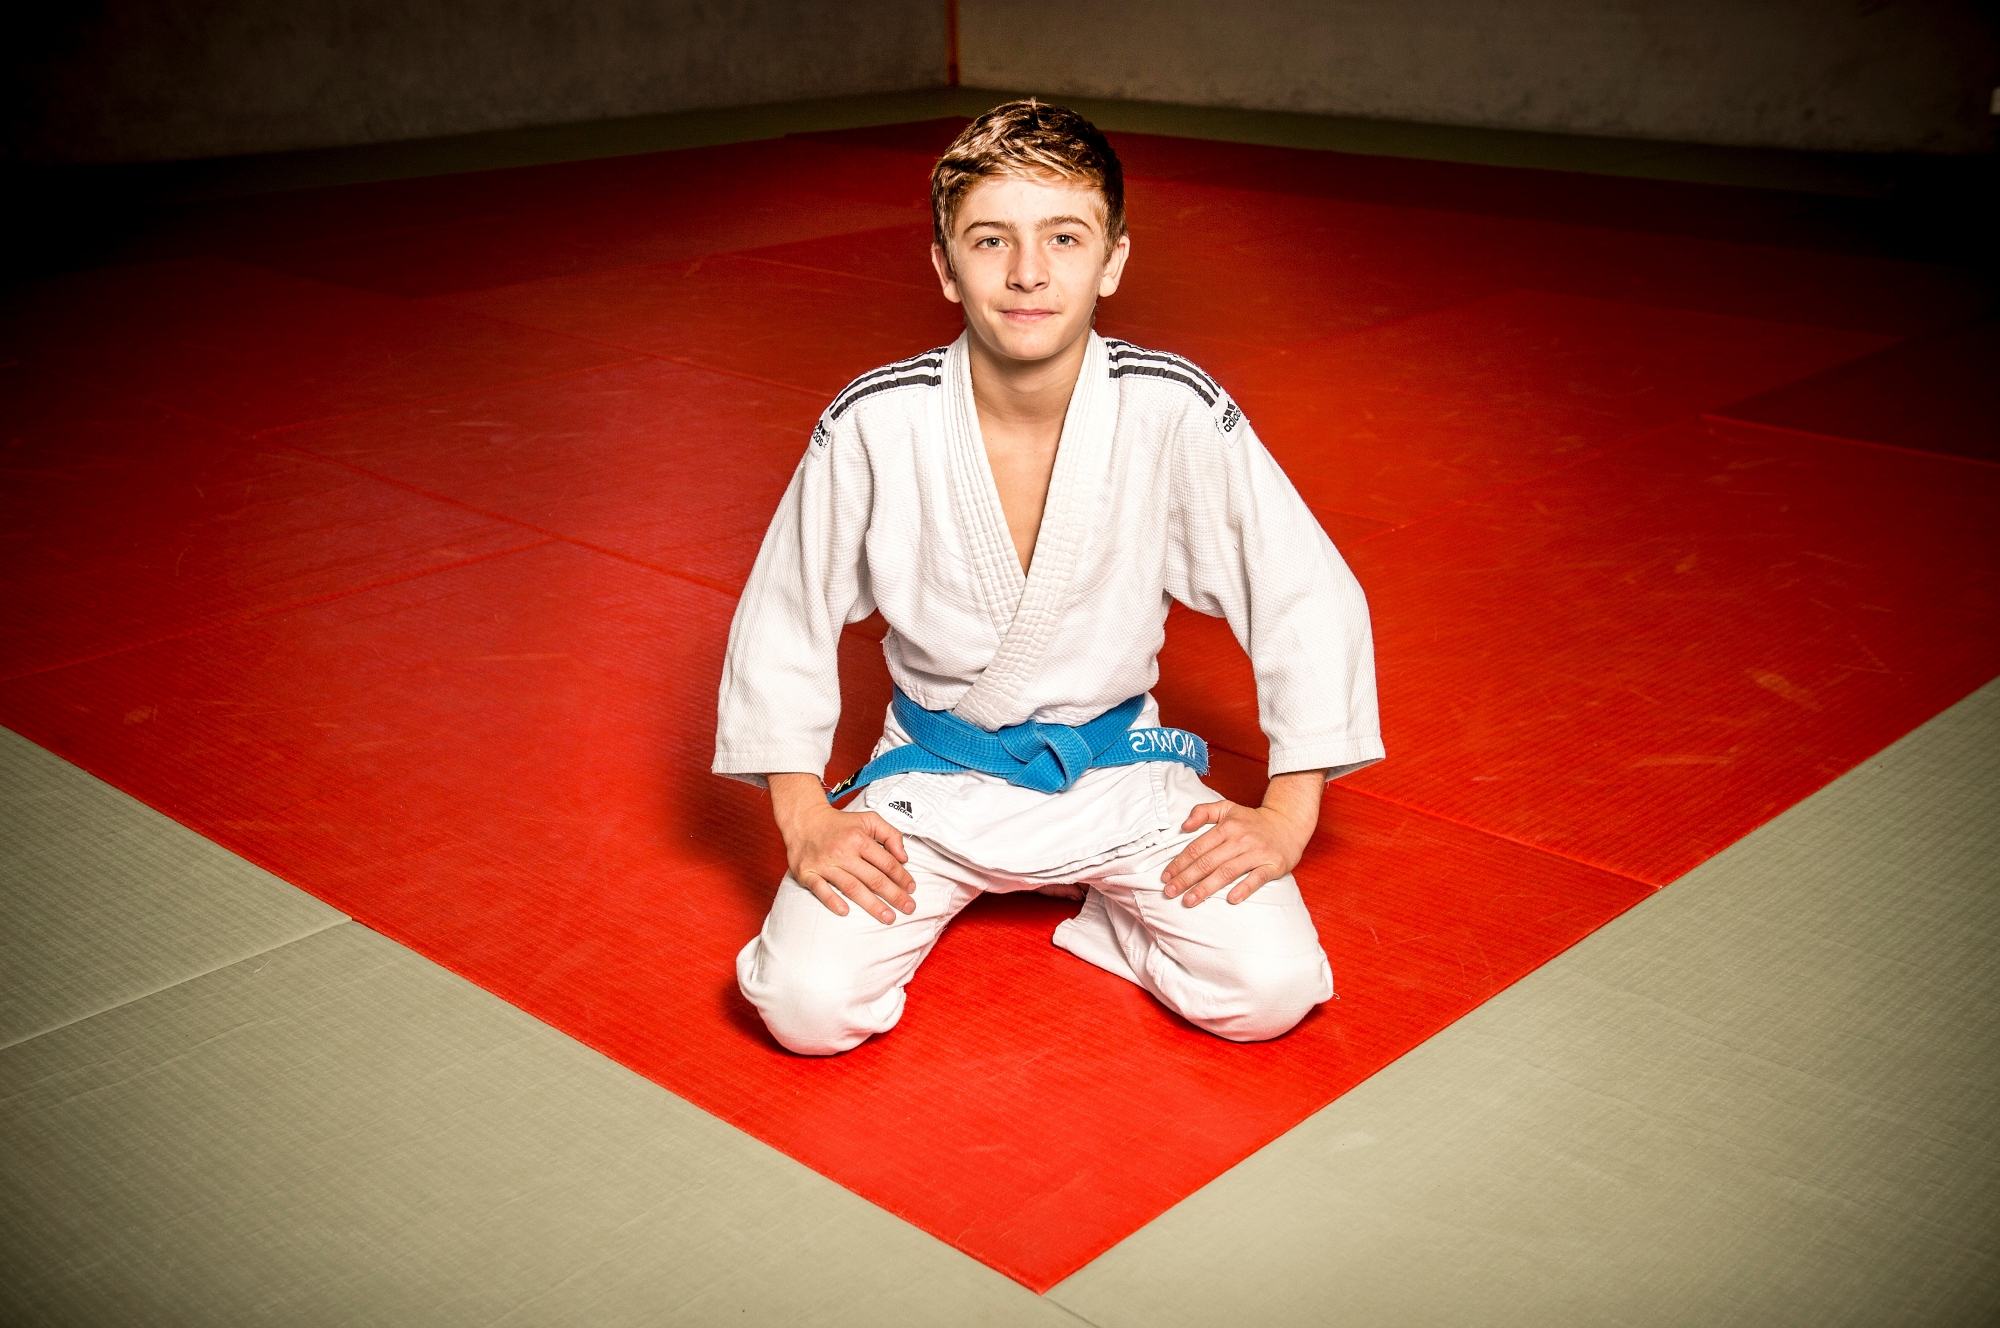 Collombey, le 12.10.2017. Le jeune Simon MAYTAN est un espoir du Club de Collombey et du judo valaisan.  (Le Nouvelliste/Christian HOFMANN) Simon Maytan, espoir du judo valaisan